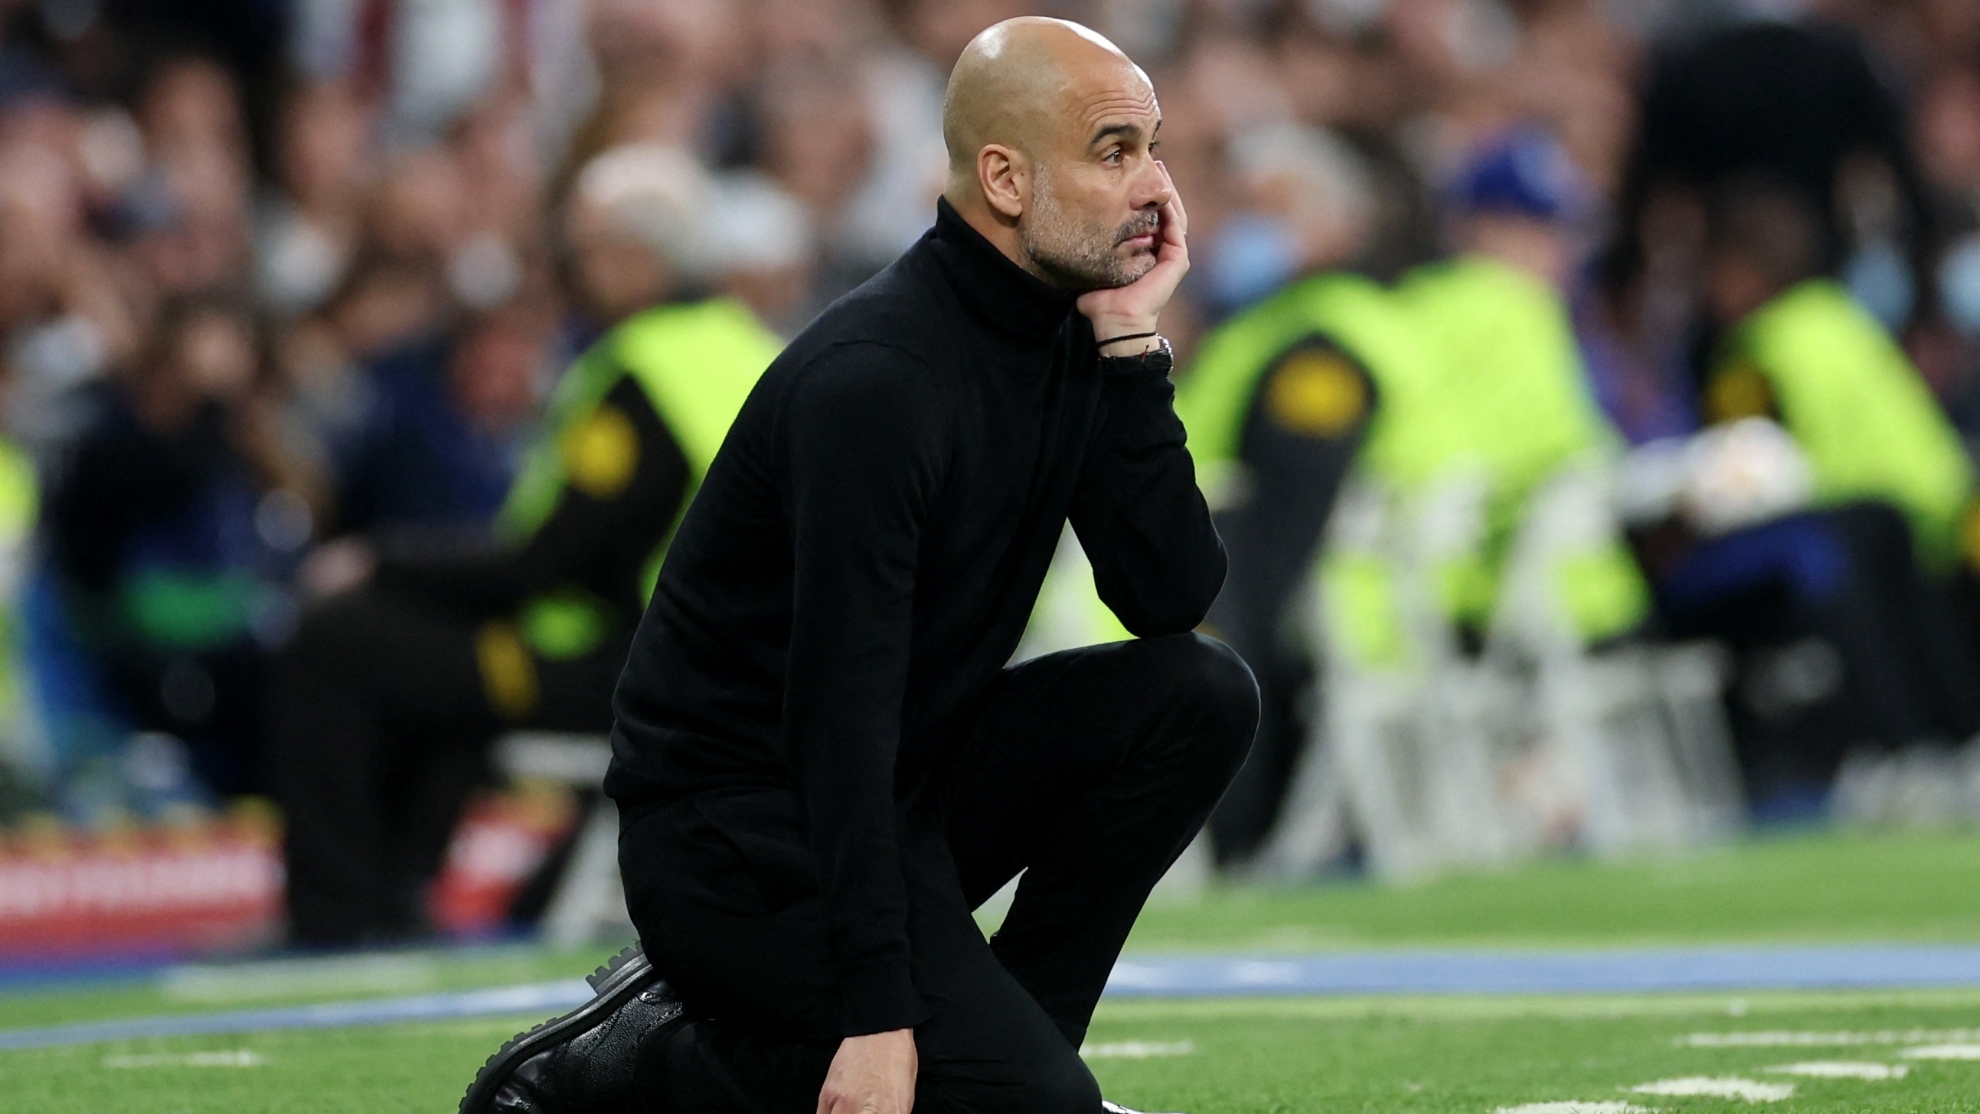 El entrenador del City fue cuestionado sobre la derrota ante el Madrid